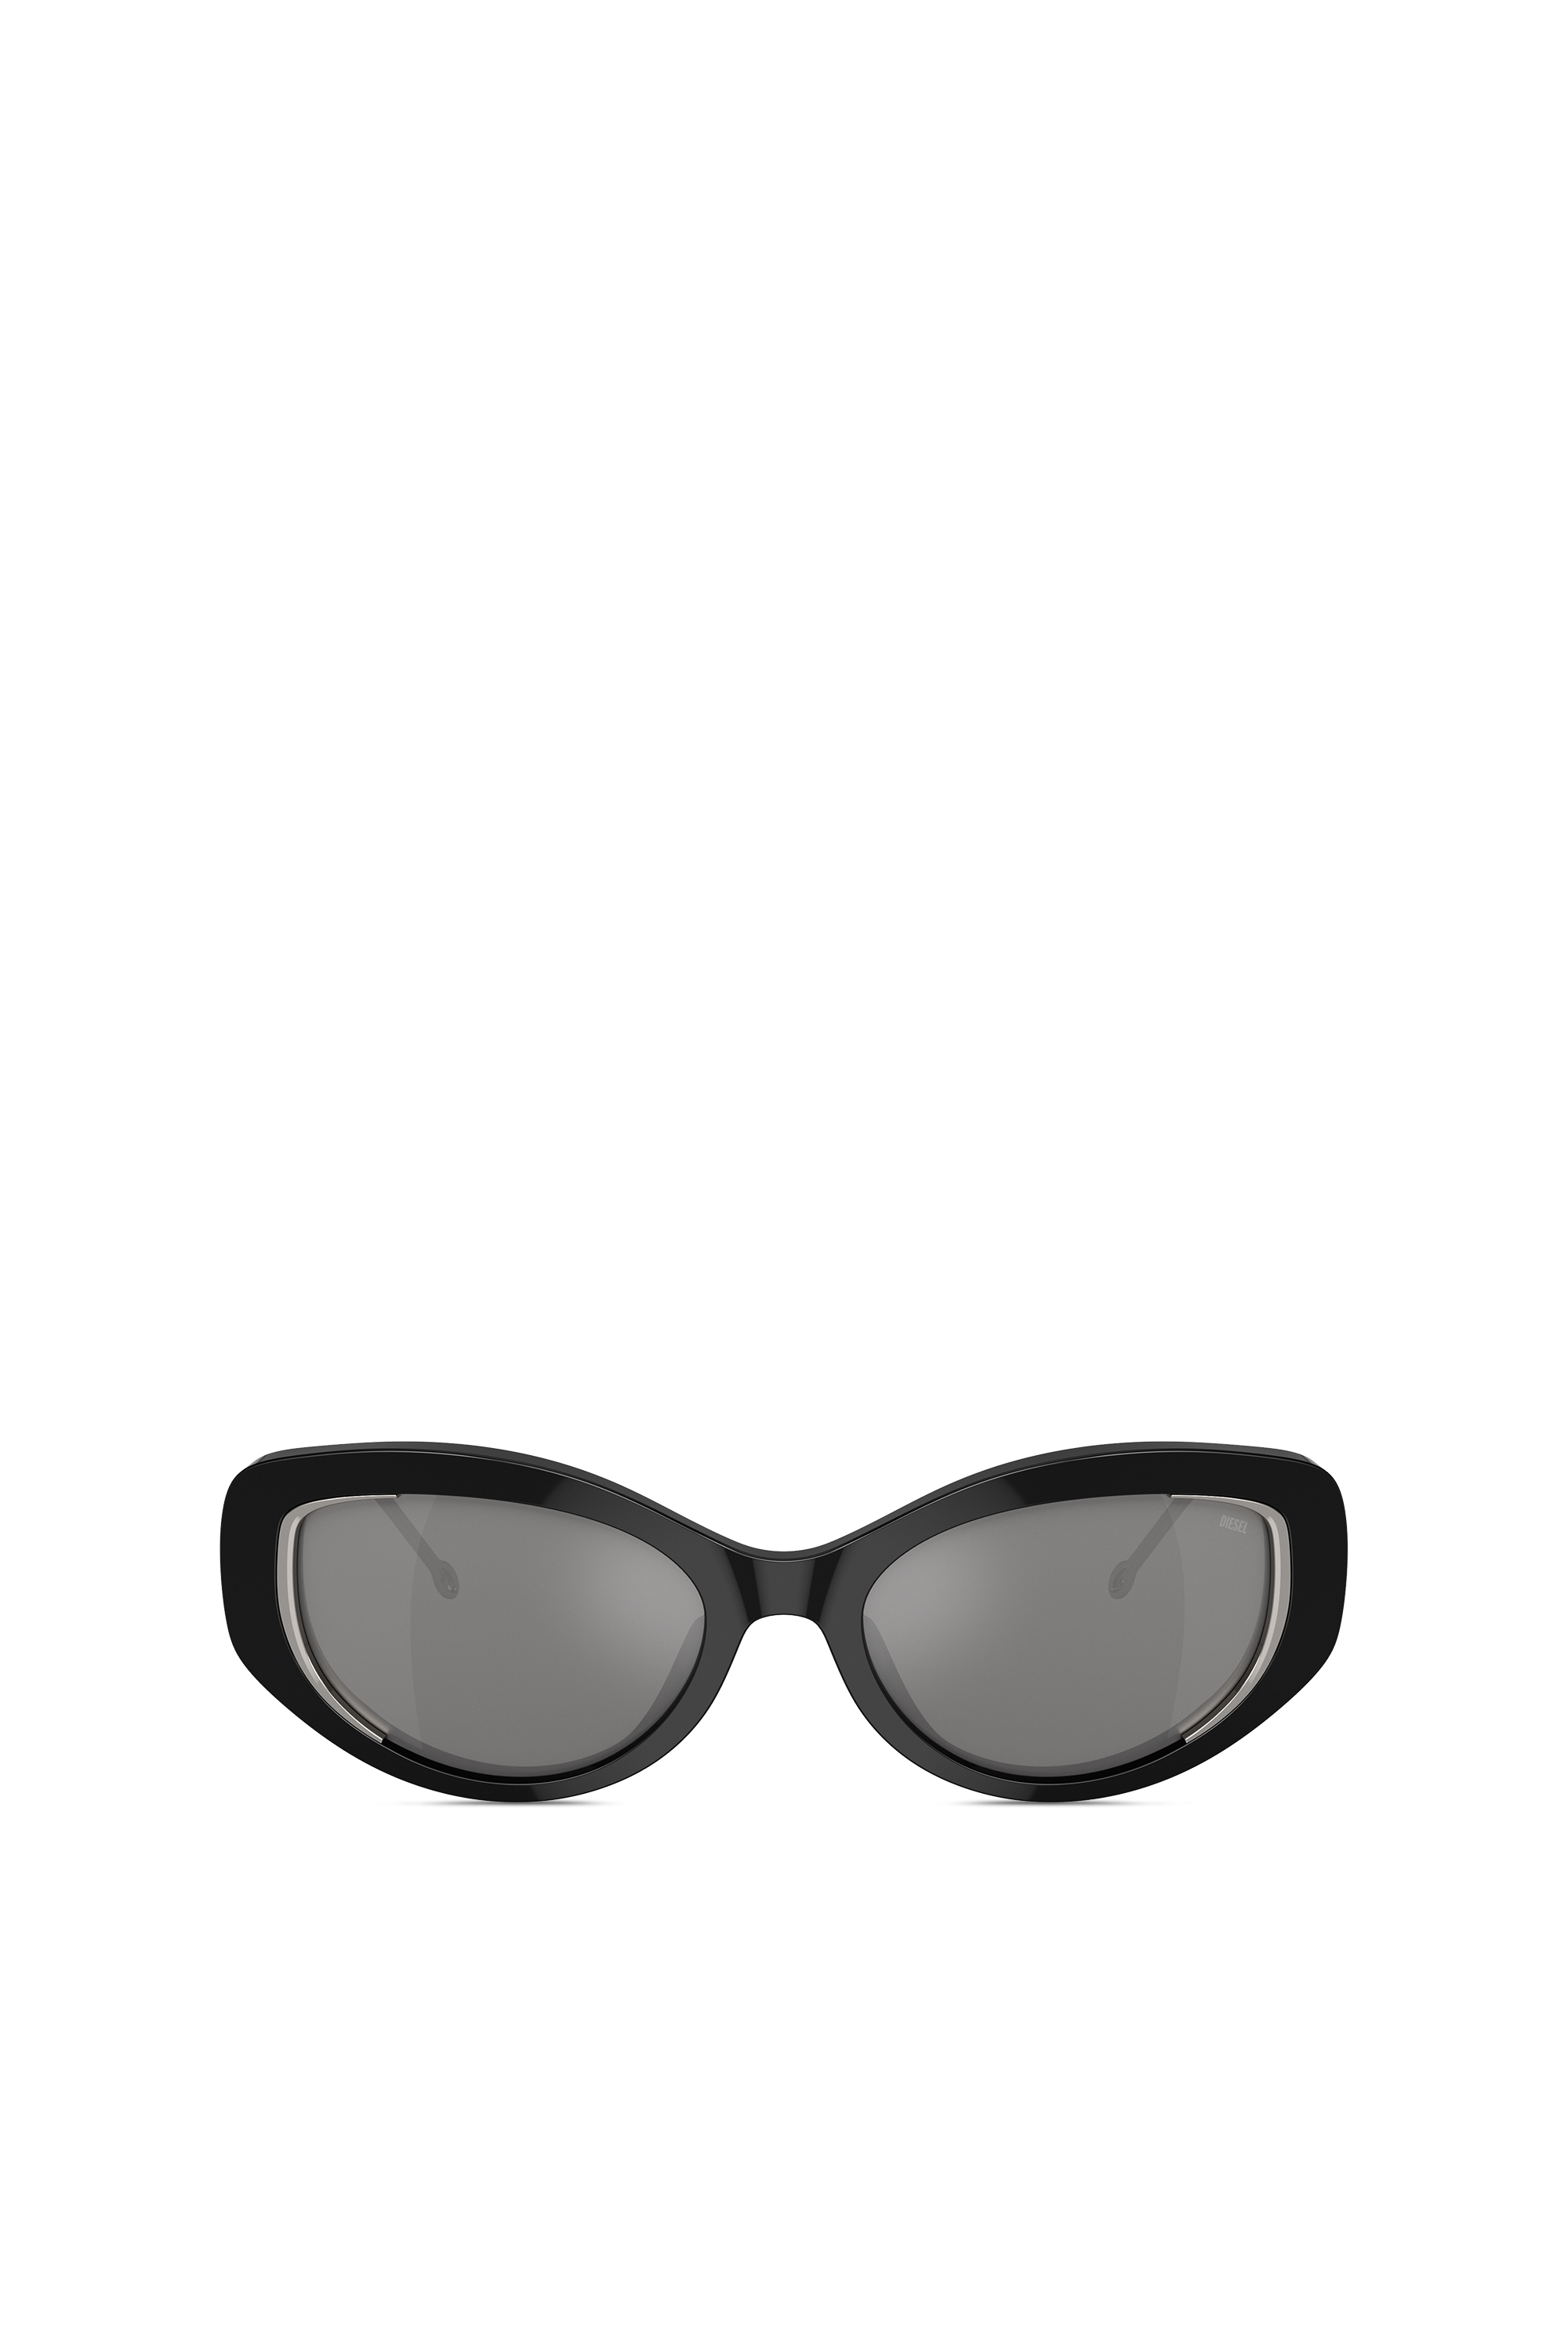 Diesel - Gafas modelo de ojo de gato - Gafas de sol - Unisex - Negro